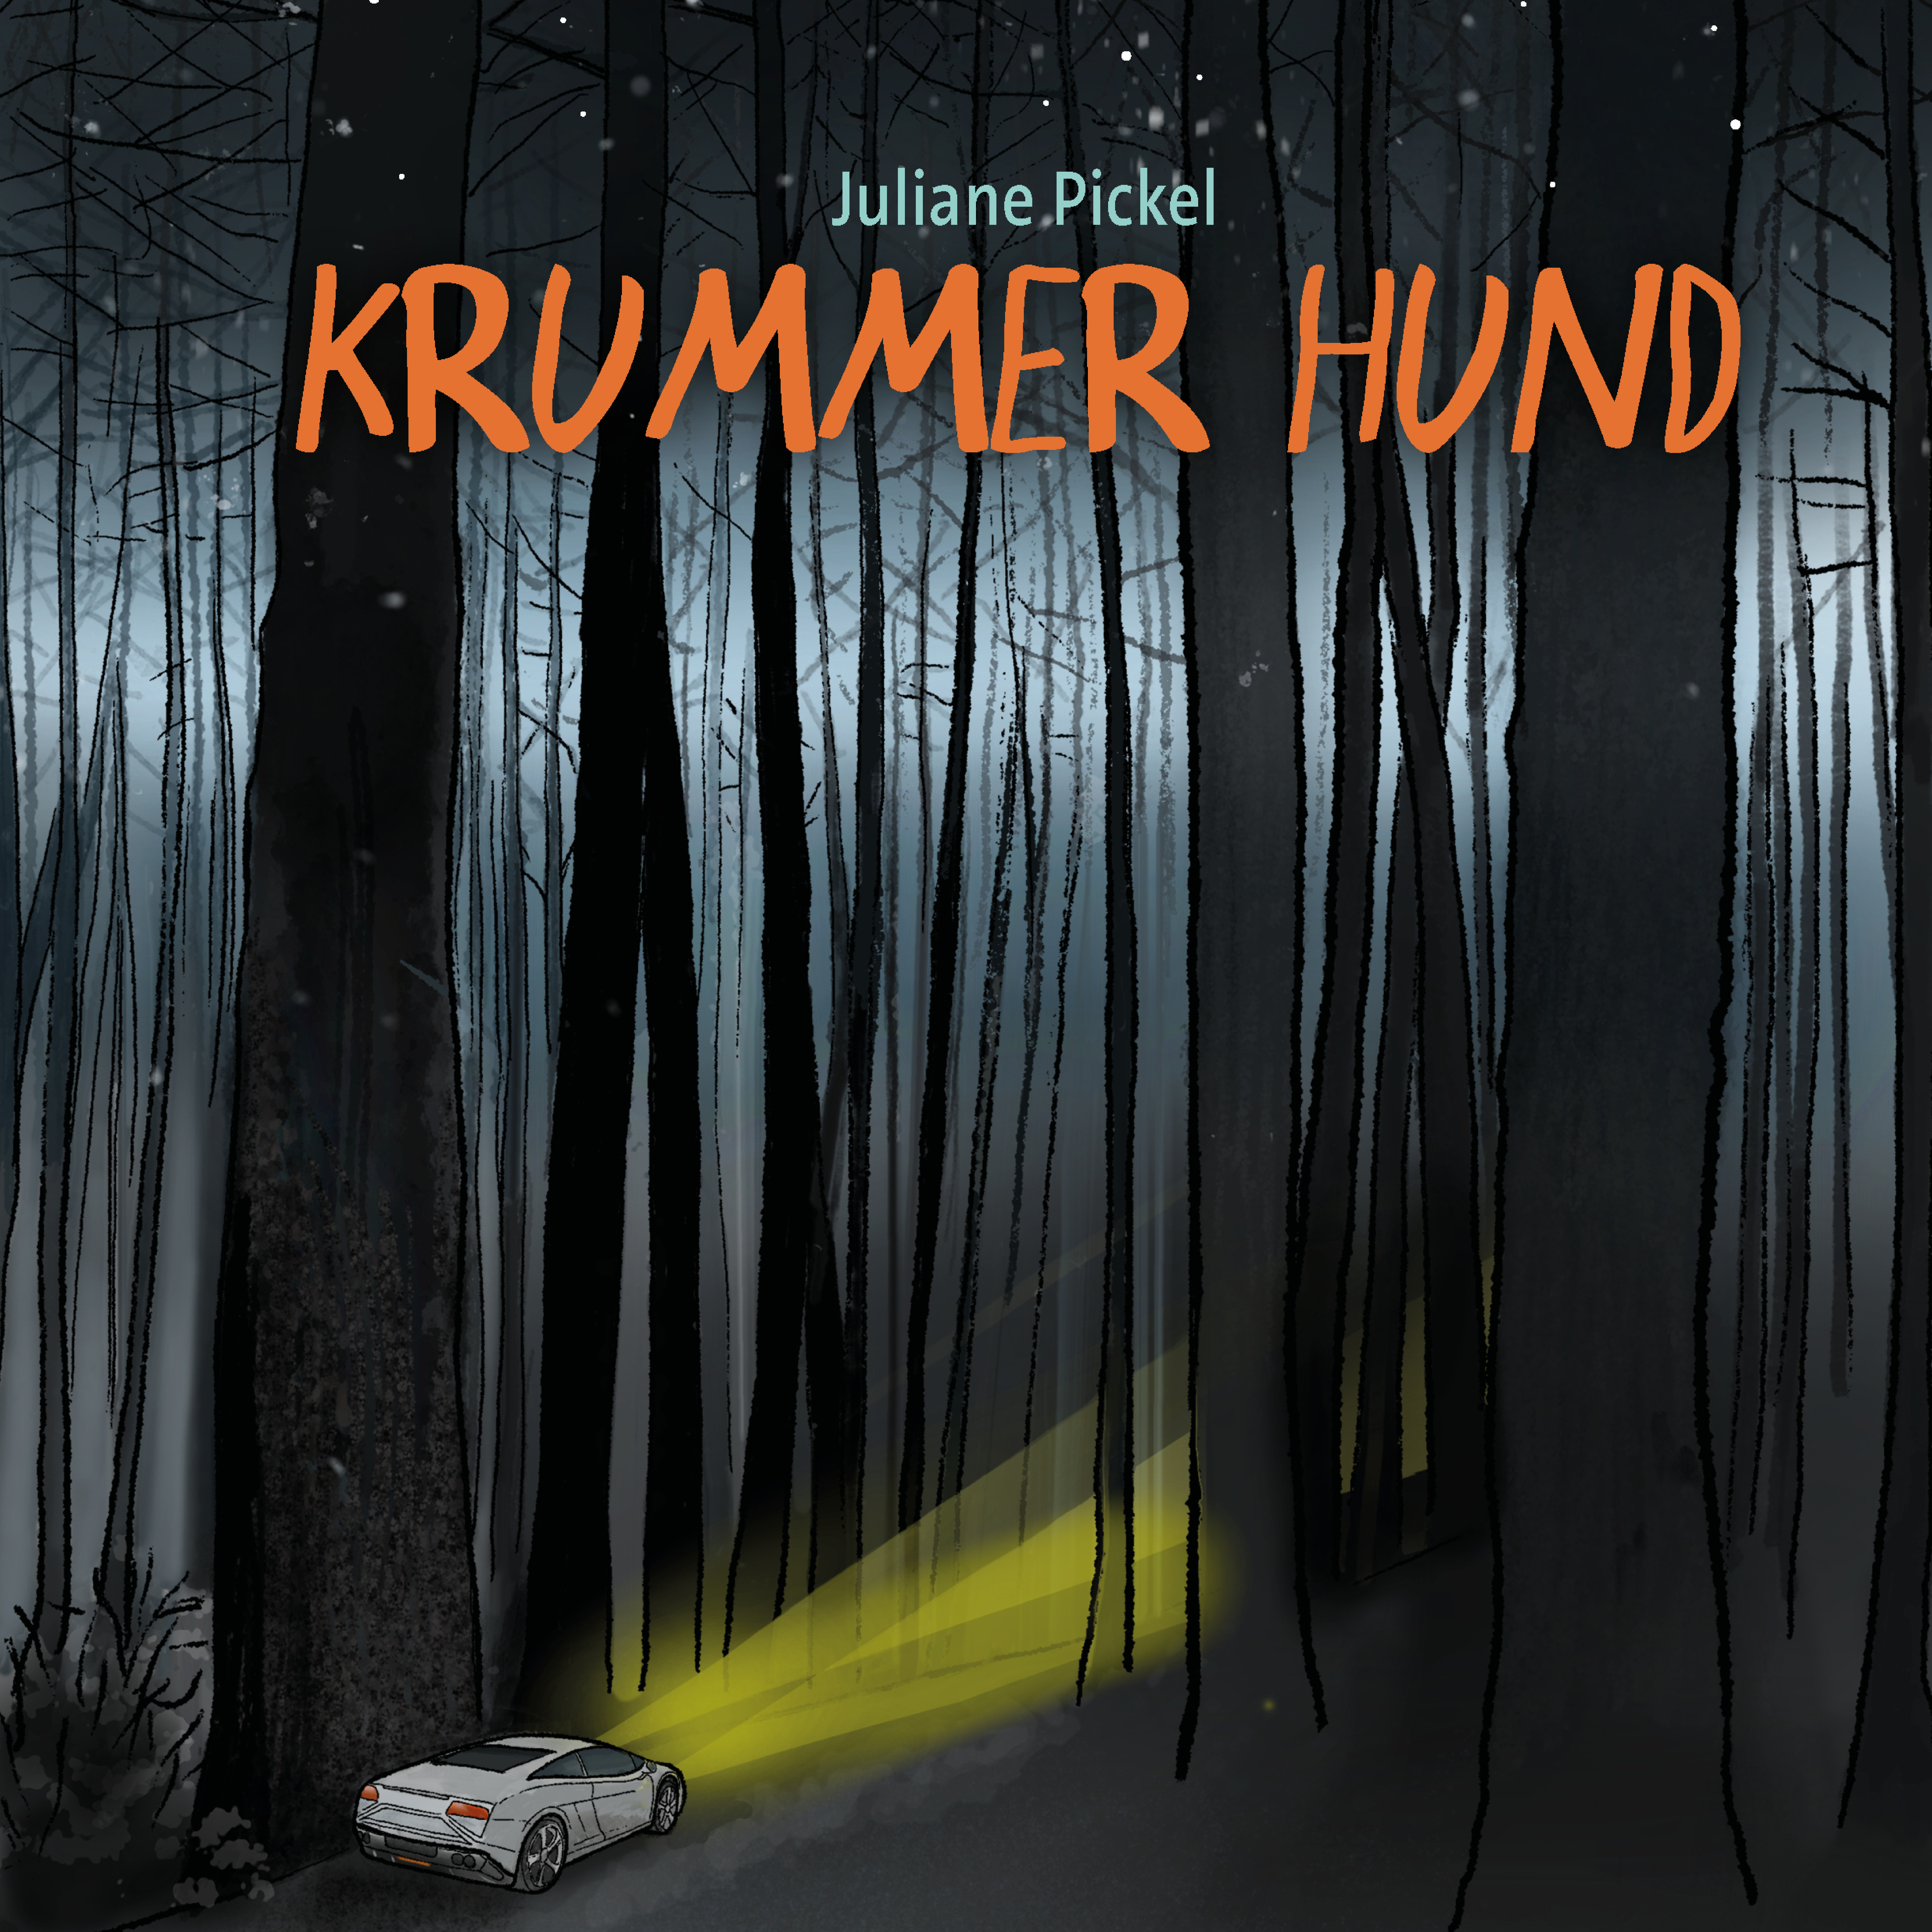 Krummer Hund – Juliane Pickel